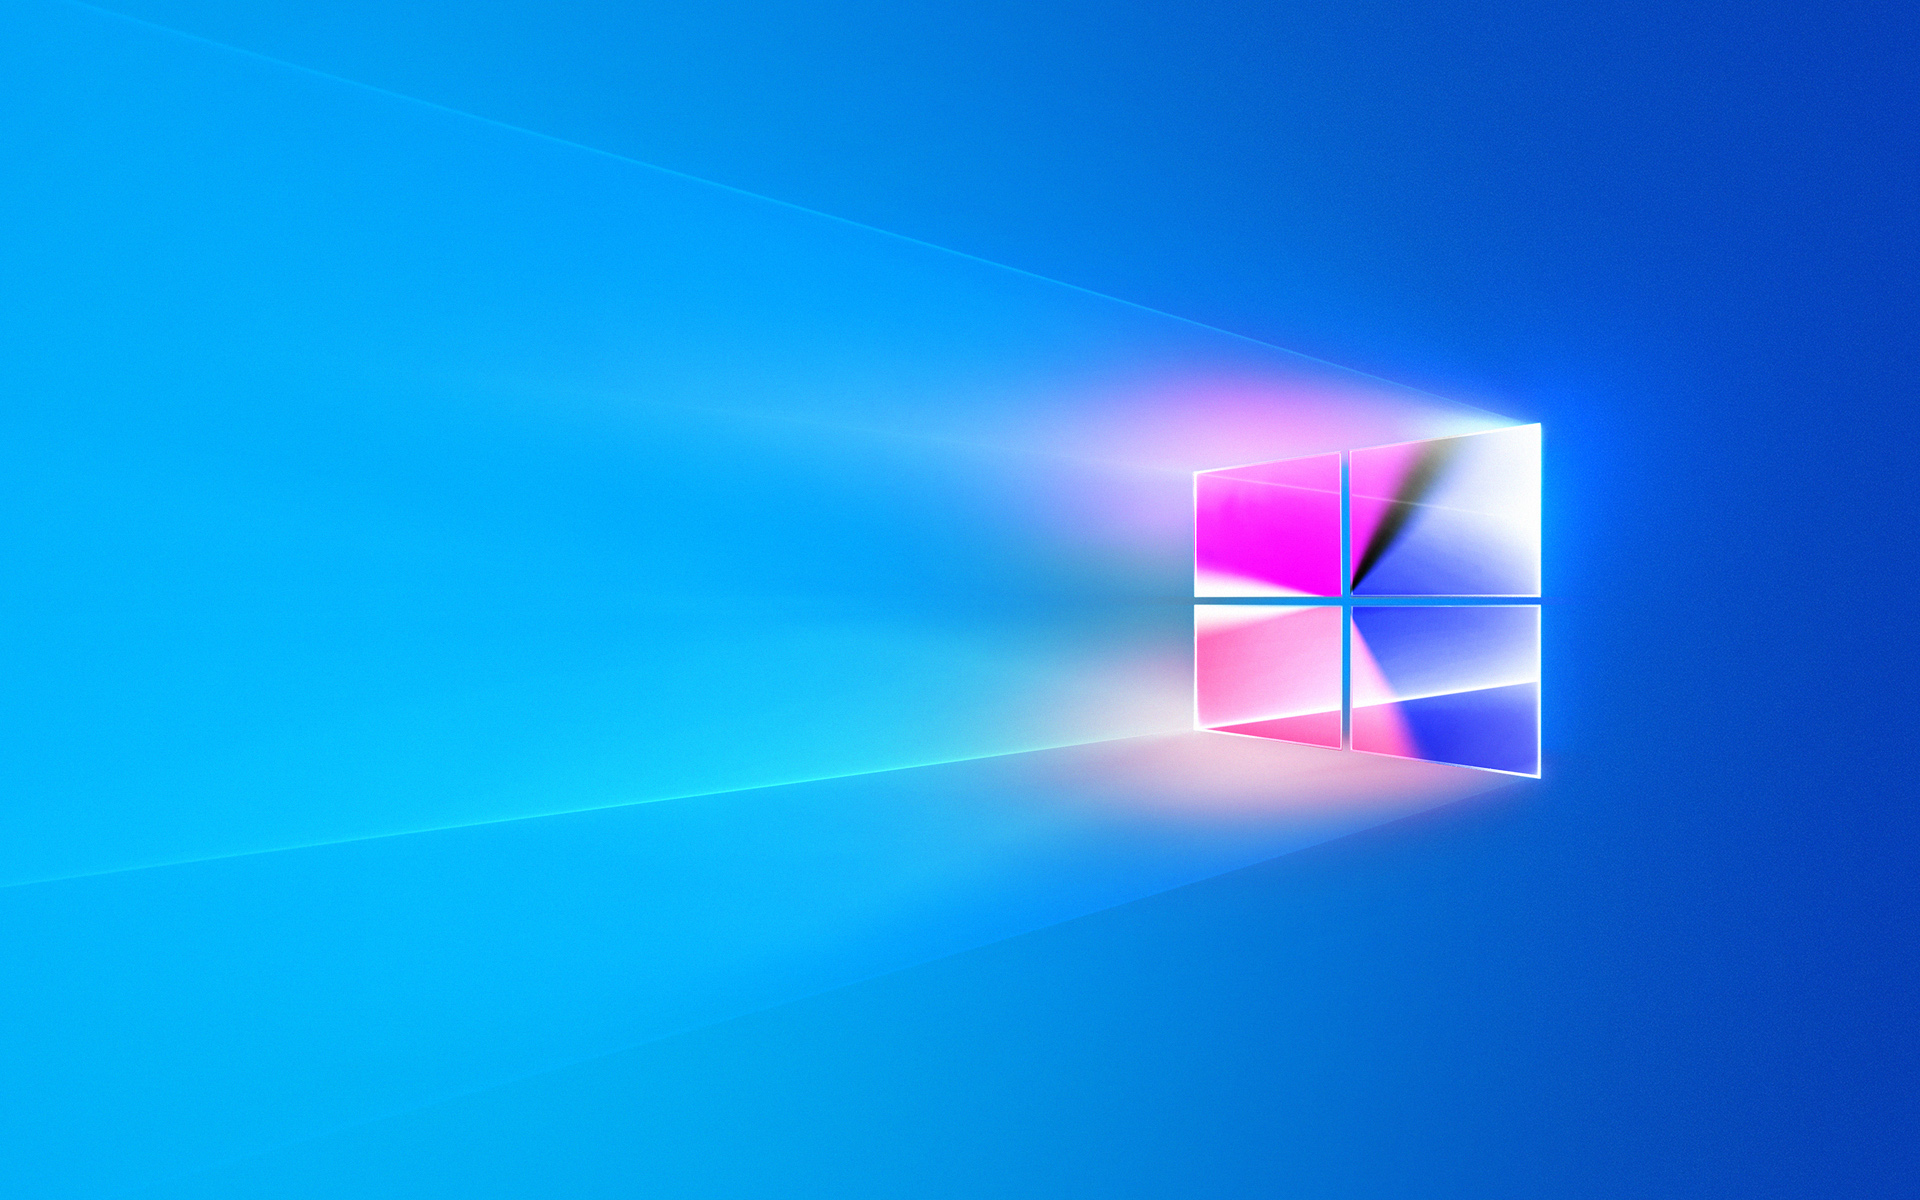 Hình nền win 10: Khám phá thế giới tuyệt vời của Windows 10 với những hình nền độc đáo và đẹp mắt. Những bức tranh sống động và chất lượng cao sẽ tạo ra một không gian làm việc tuyệt vời cho bạn. Hãy tải ngay hình nền Win 10 độc đáo và thể hiện phong cách của mình.